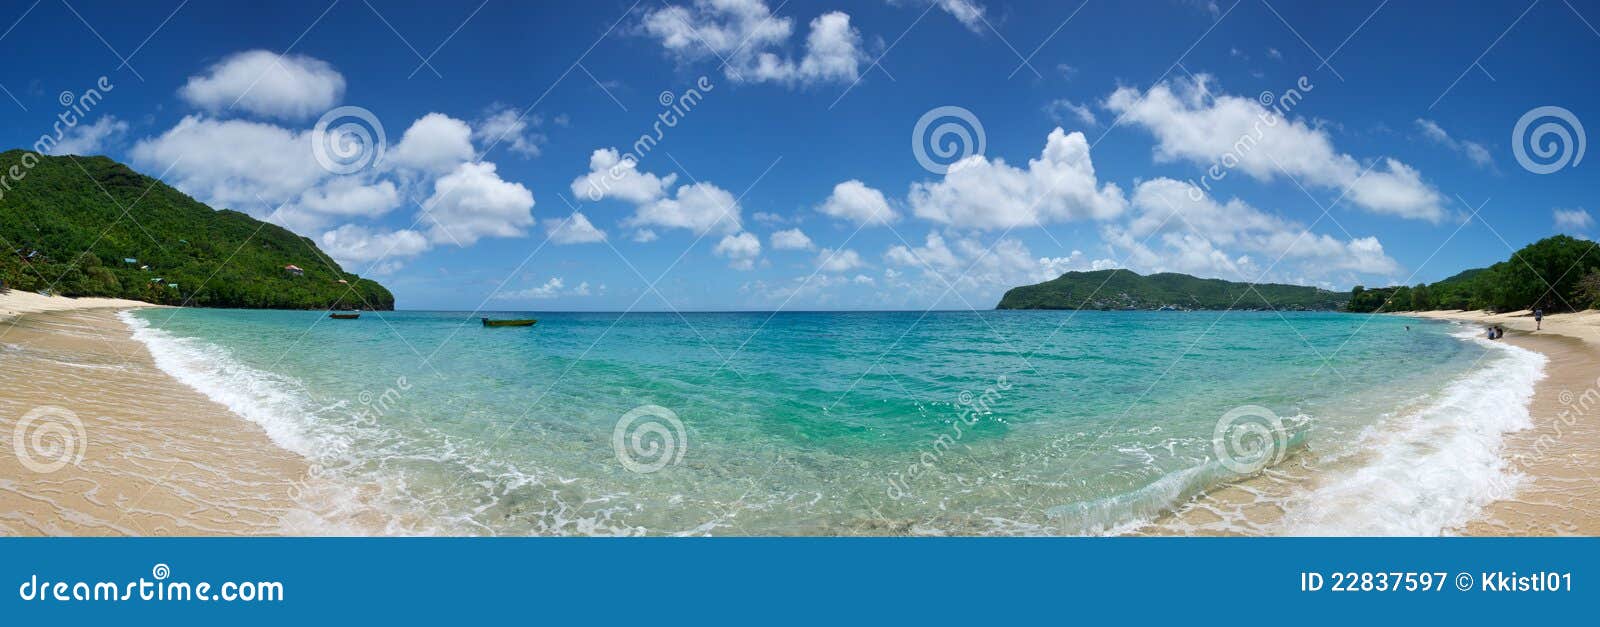 caribbean beach cove